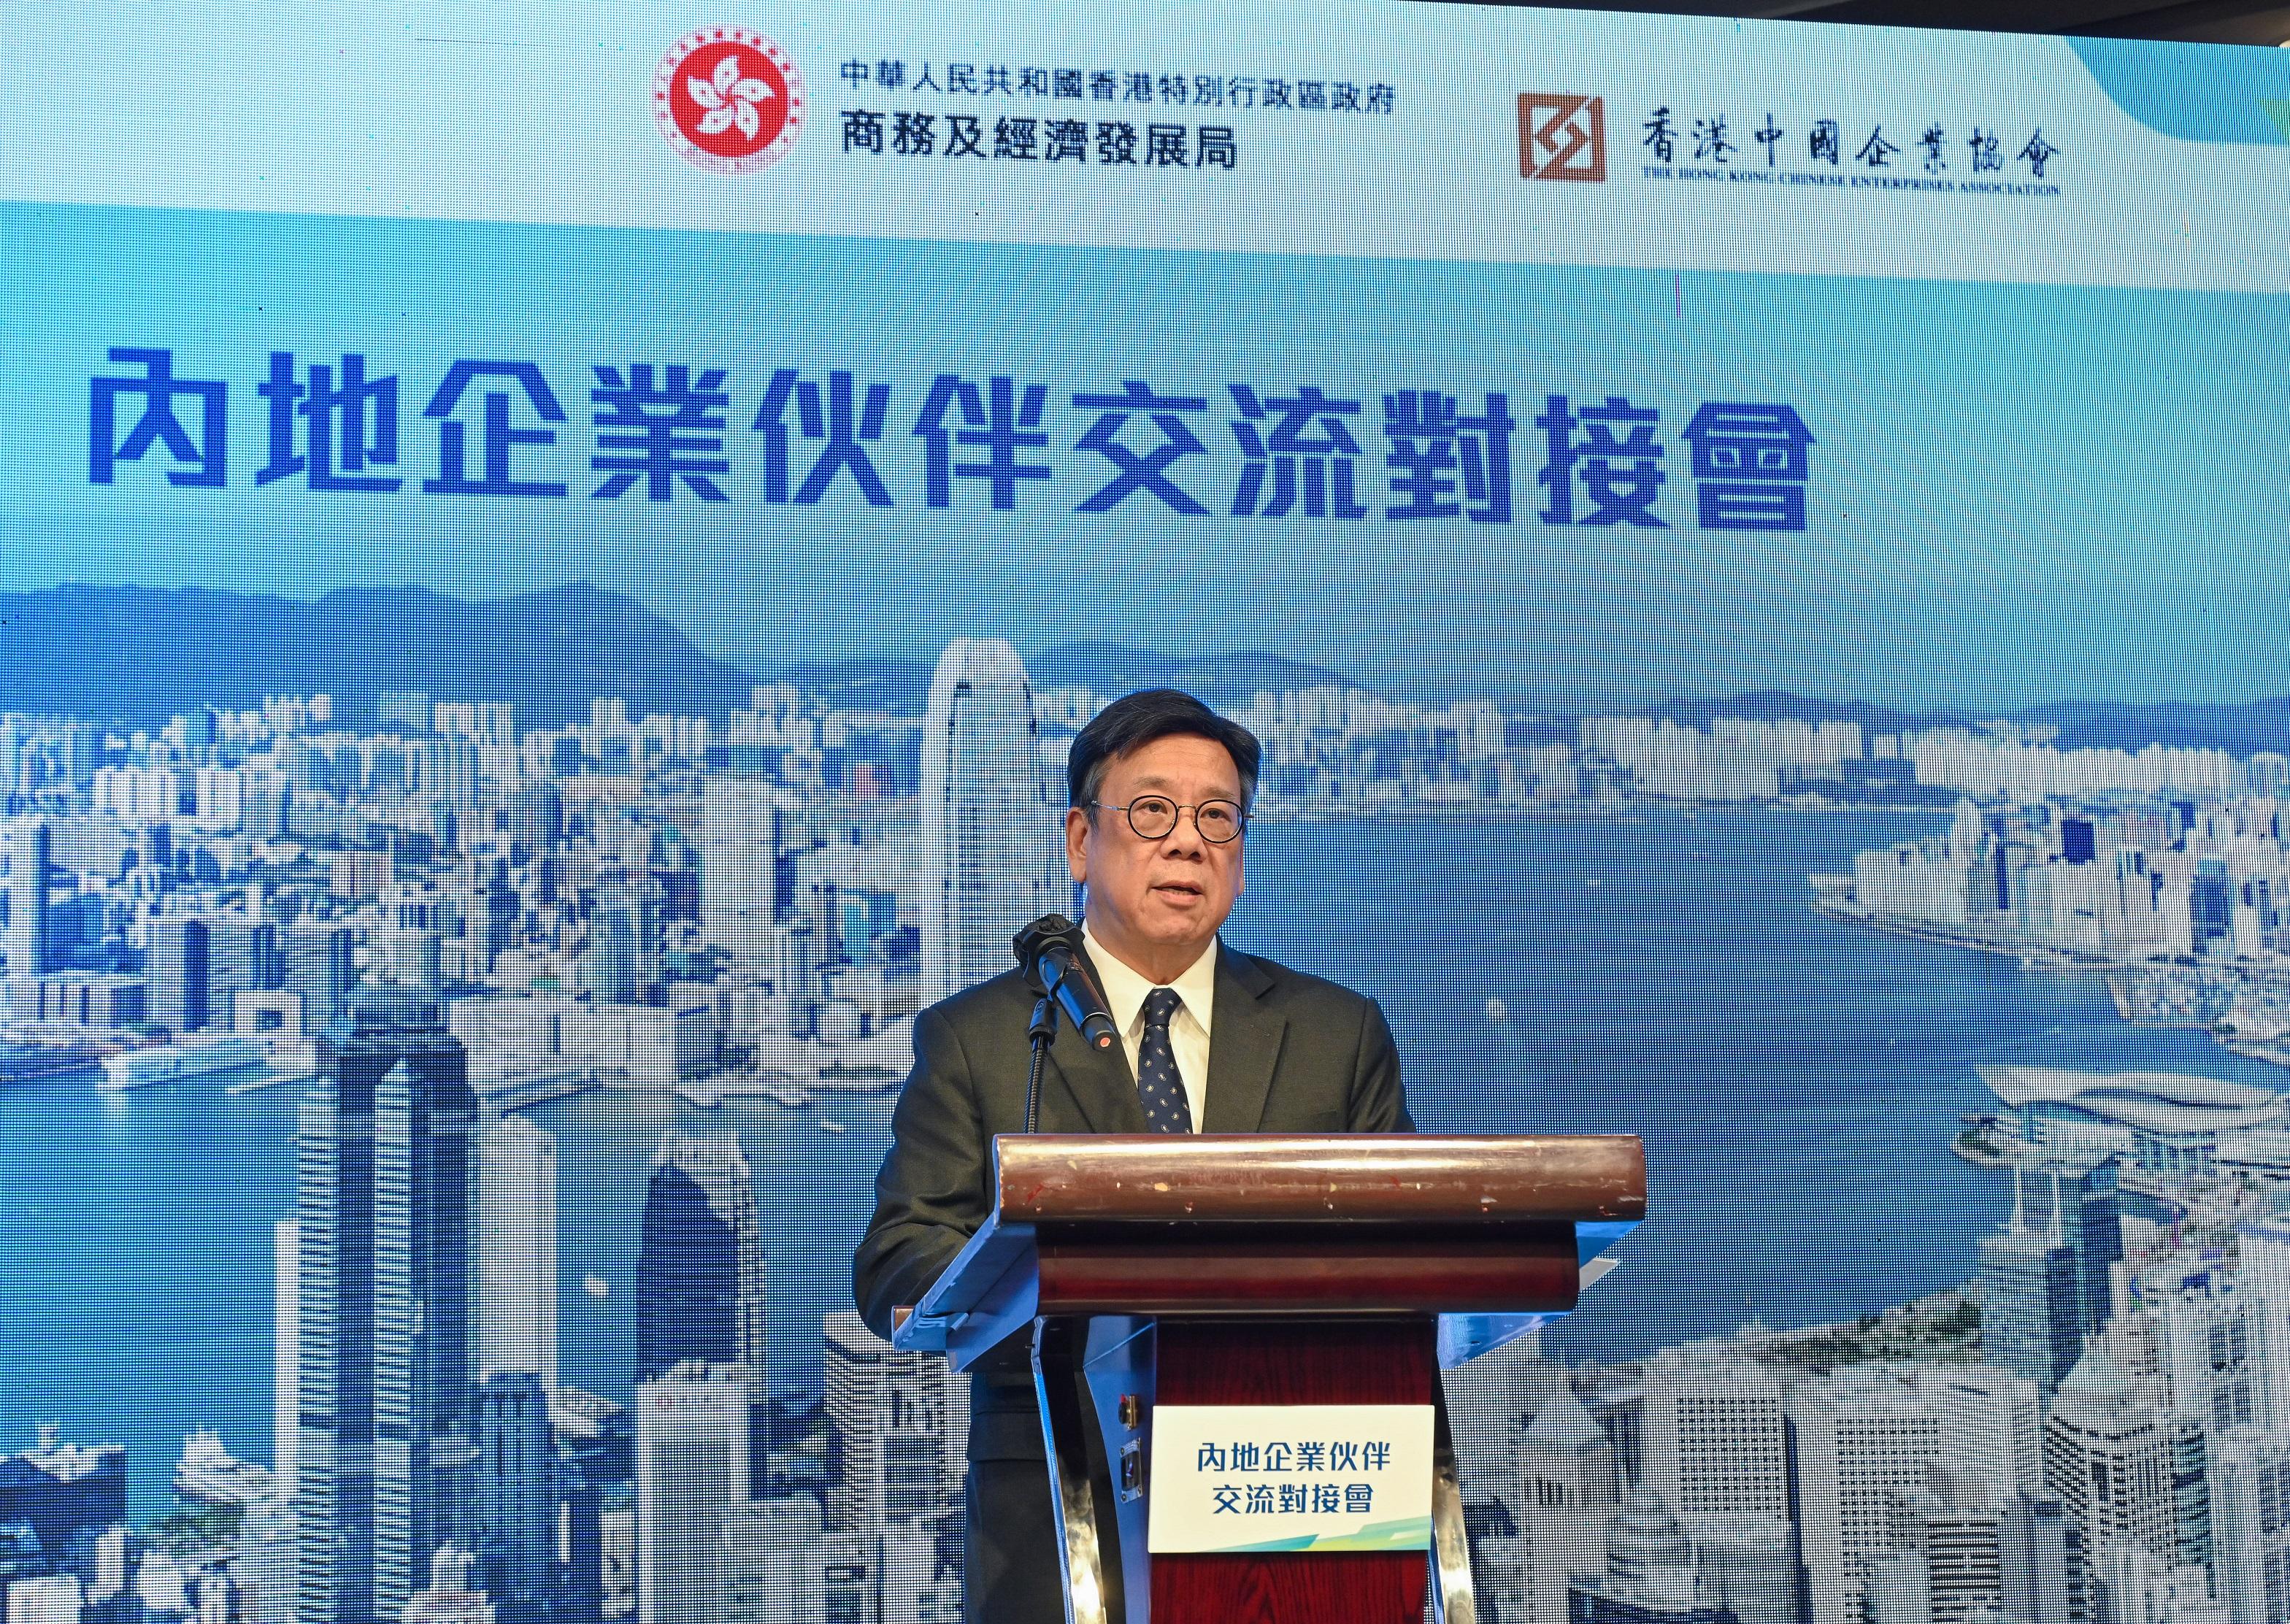 商務及經濟發展局（商經局）聯同香港中國企業協會今日（七月三十一日）舉辦內地企業伙伴交流對接會。圖示商經局局長丘應樺在開幕禮上致辭。